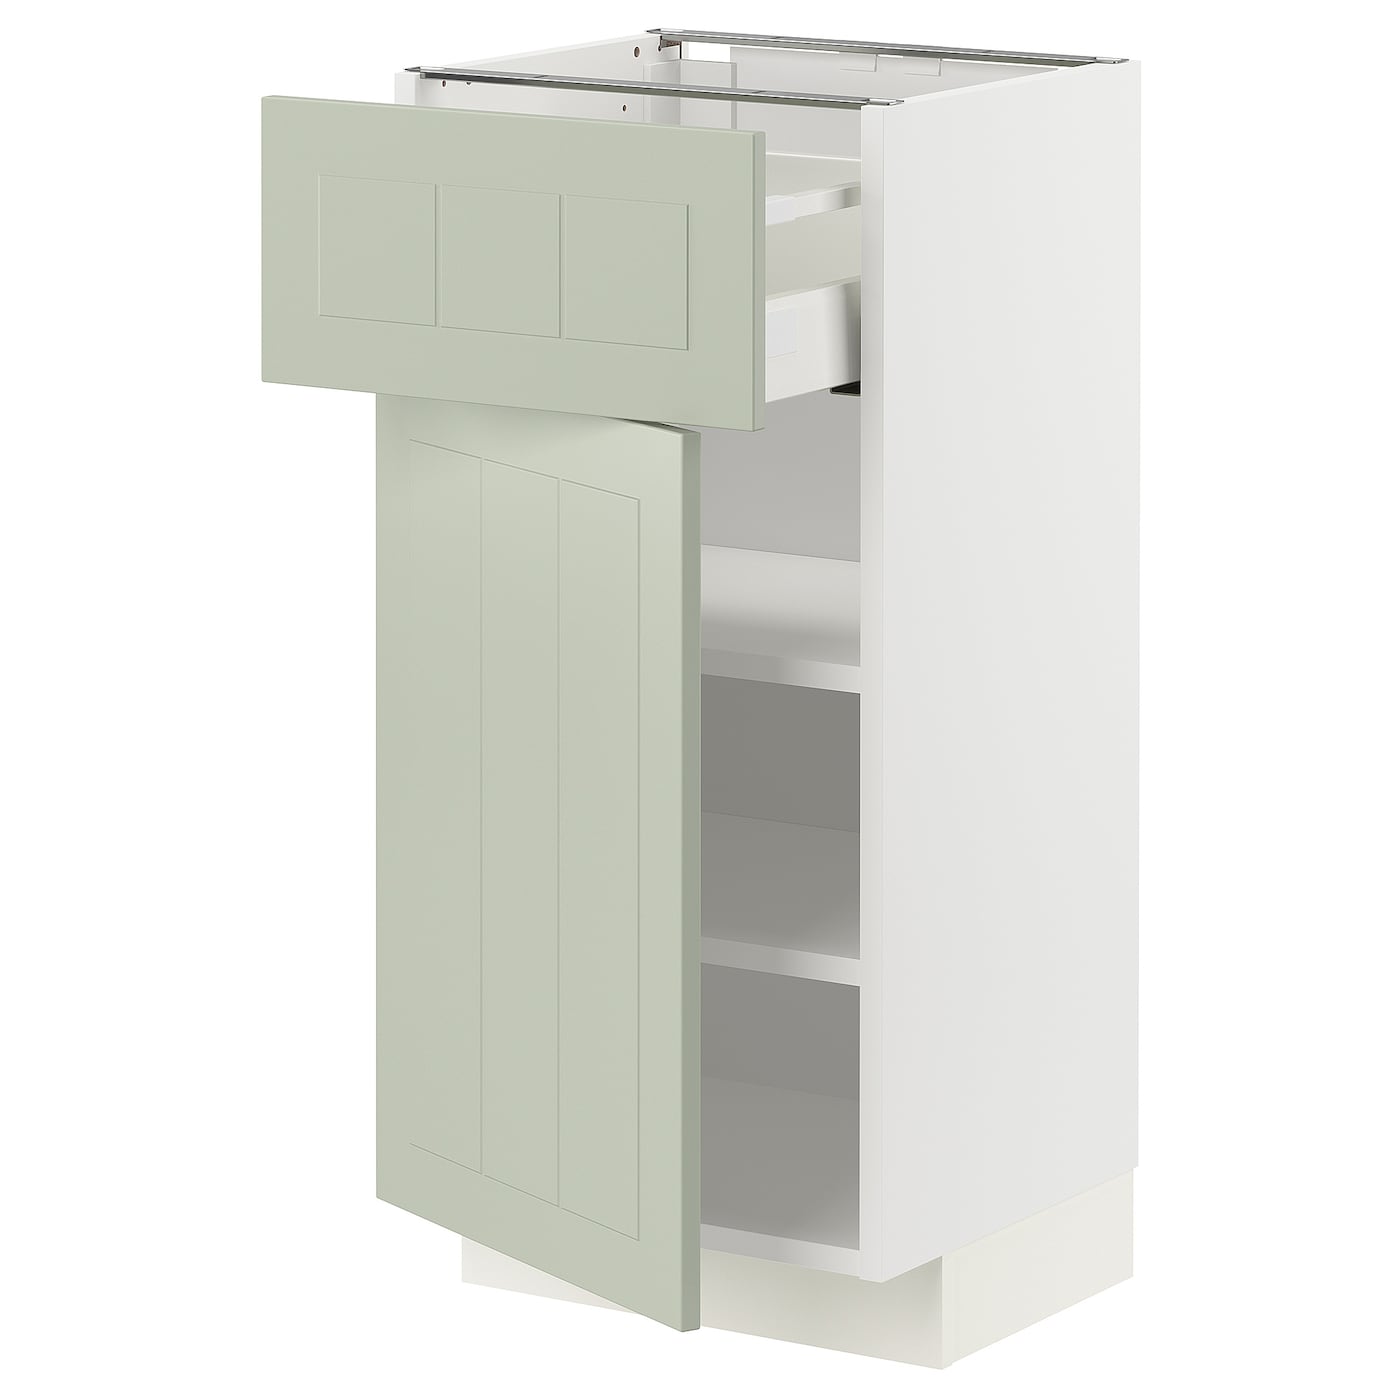 Напольный шкаф - METOD / MAXIMERA IKEA/ МЕТОД/ МАКСИМЕРА ИКЕА,  40х88 см, белый/светло-зеленый